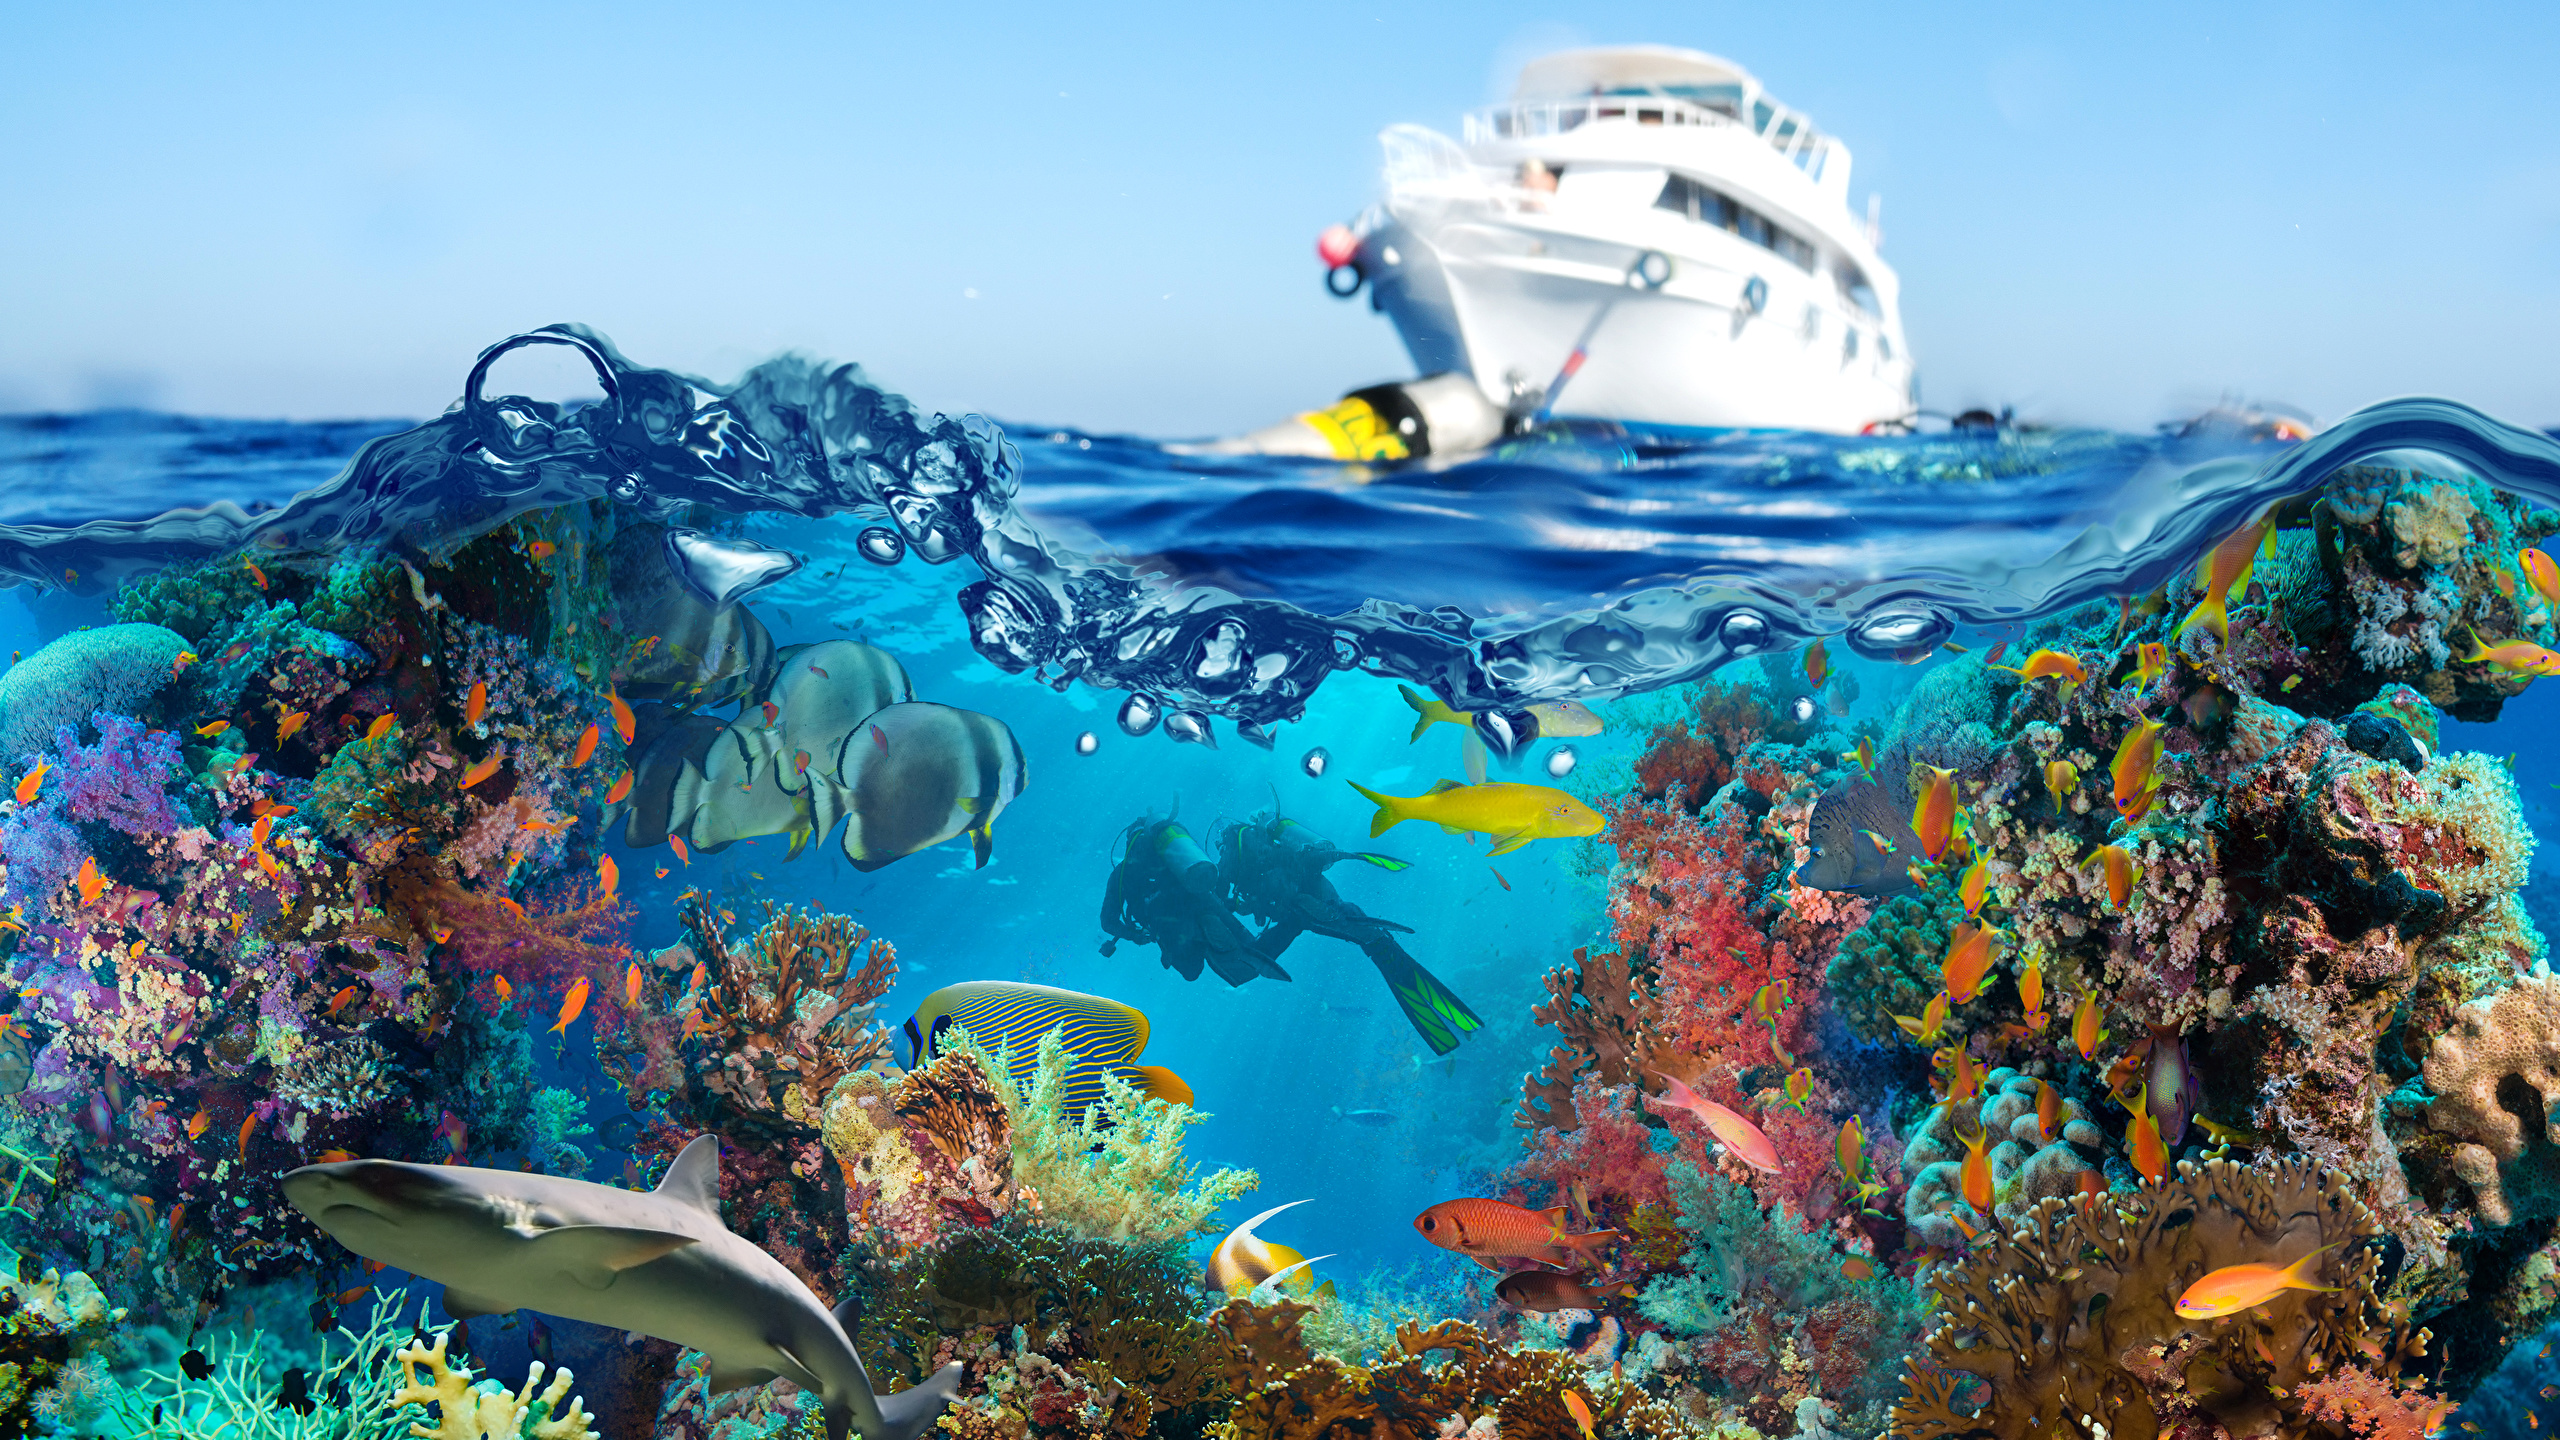 壁紙 2560x1440 アンダーウォーターワールド サンゴ 魚類 ヨット ダイビング 動物 ダウンロード 写真